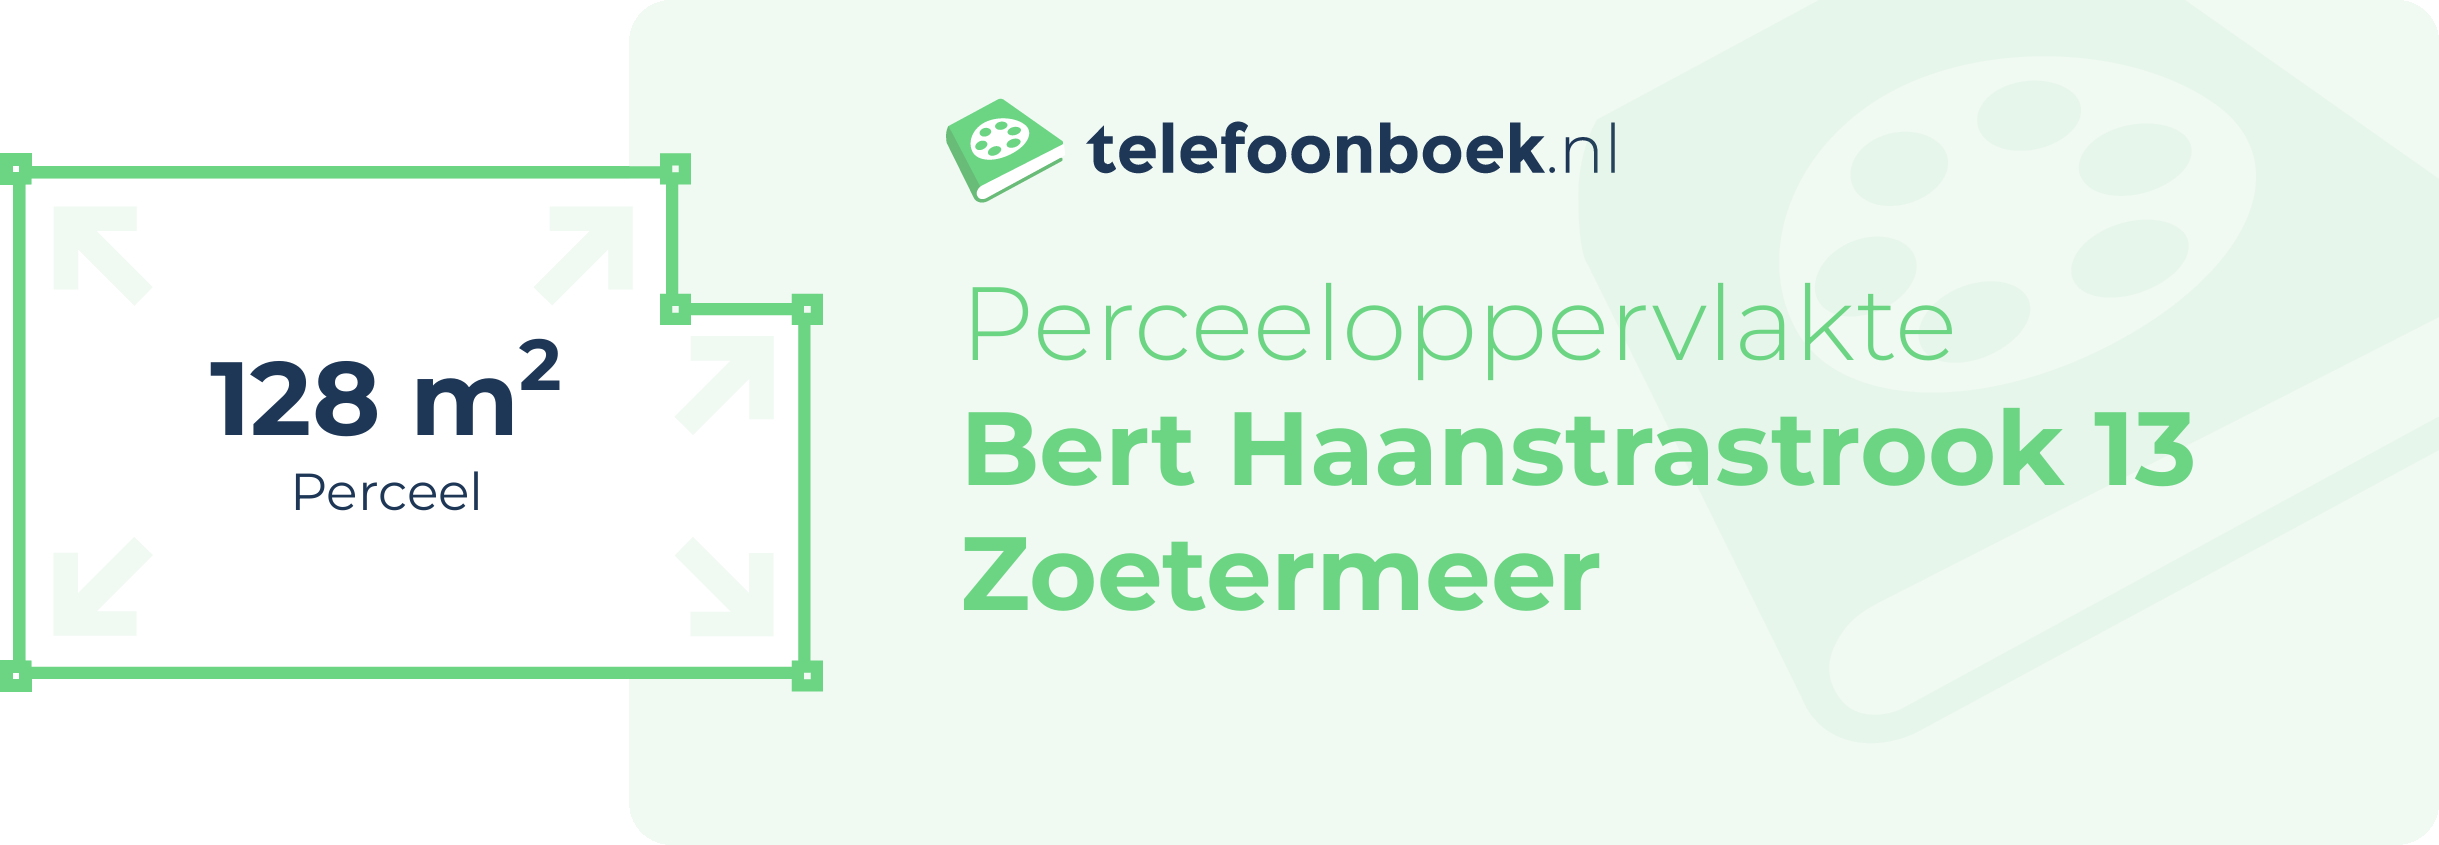 Perceeloppervlakte Bert Haanstrastrook 13 Zoetermeer